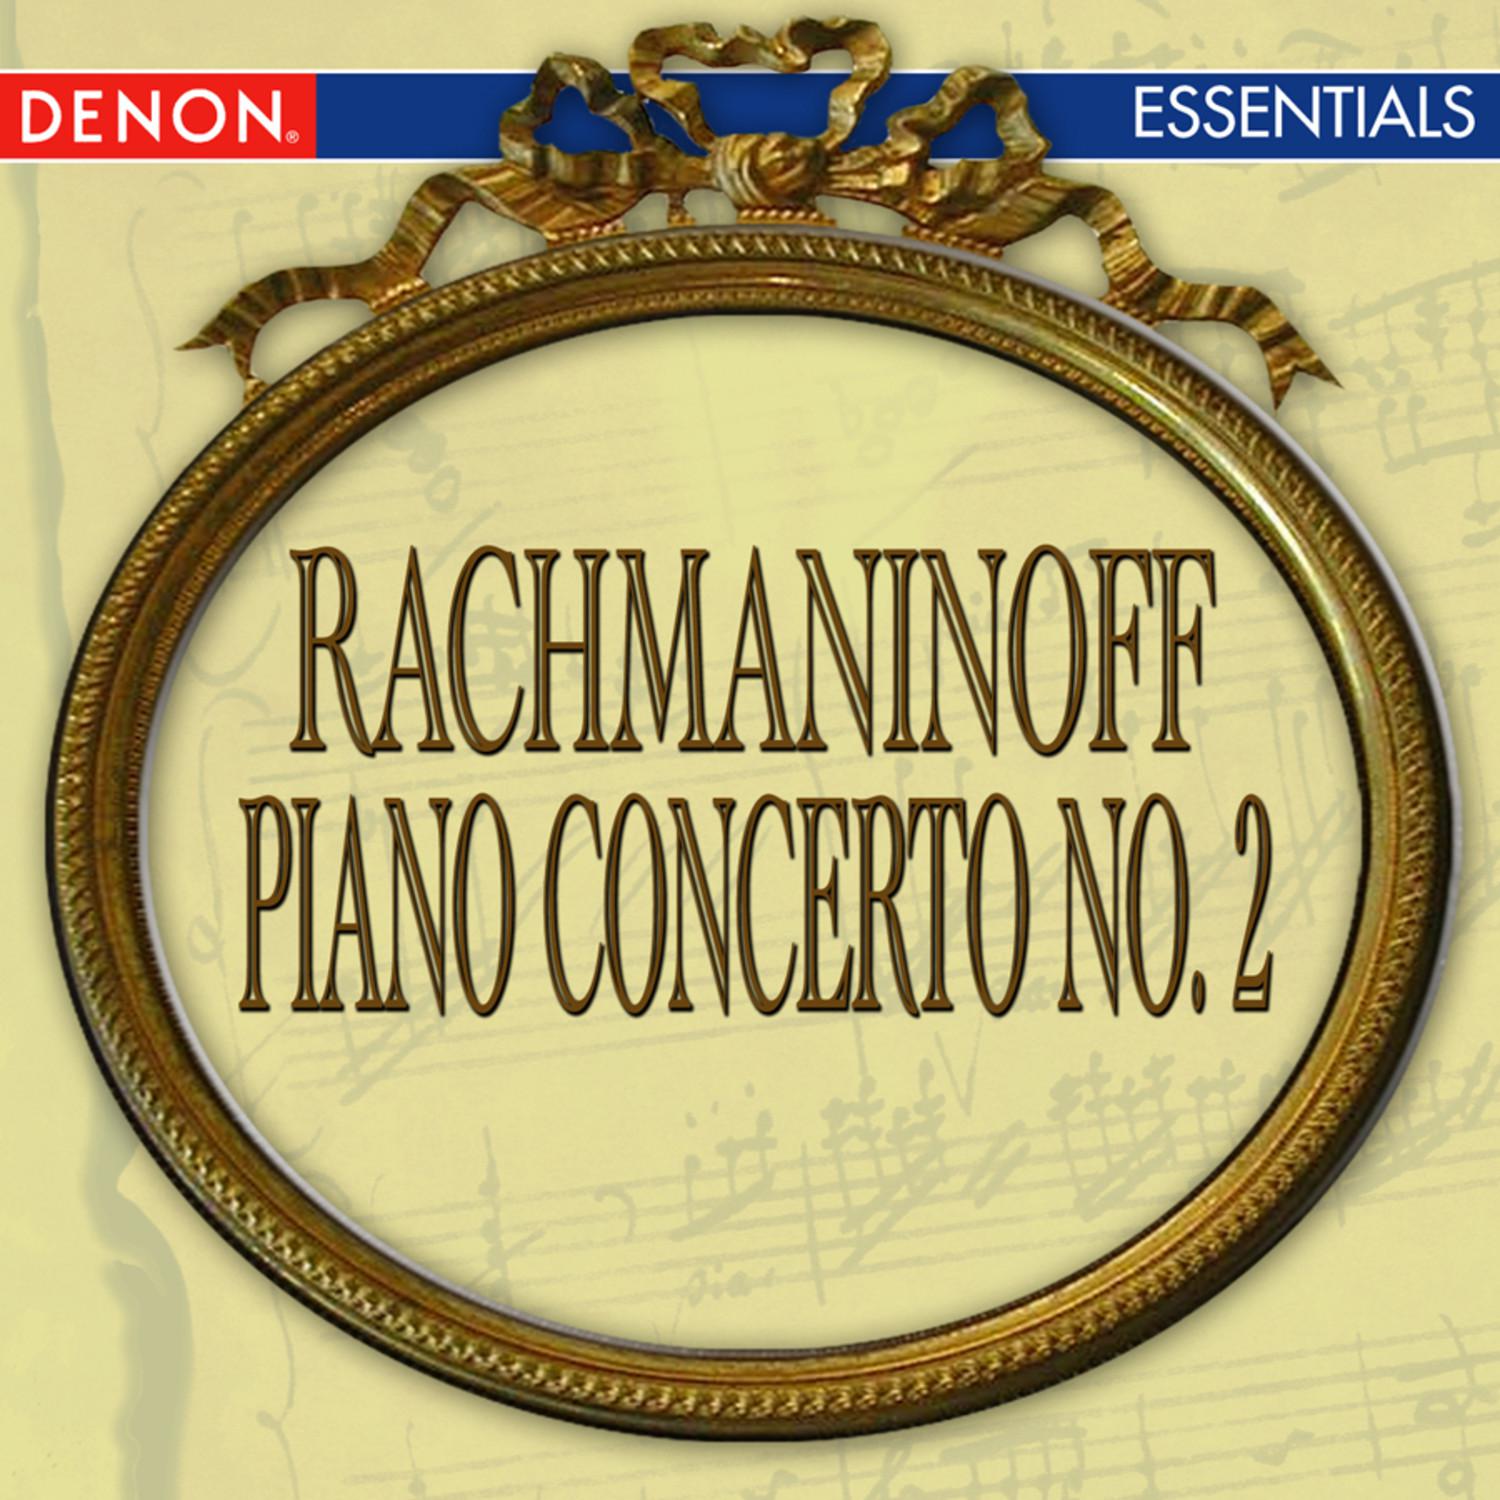 Concerto for Piano and Orchestra No. 2 in C Minor, Op. 18: I. Moderato - Allegro